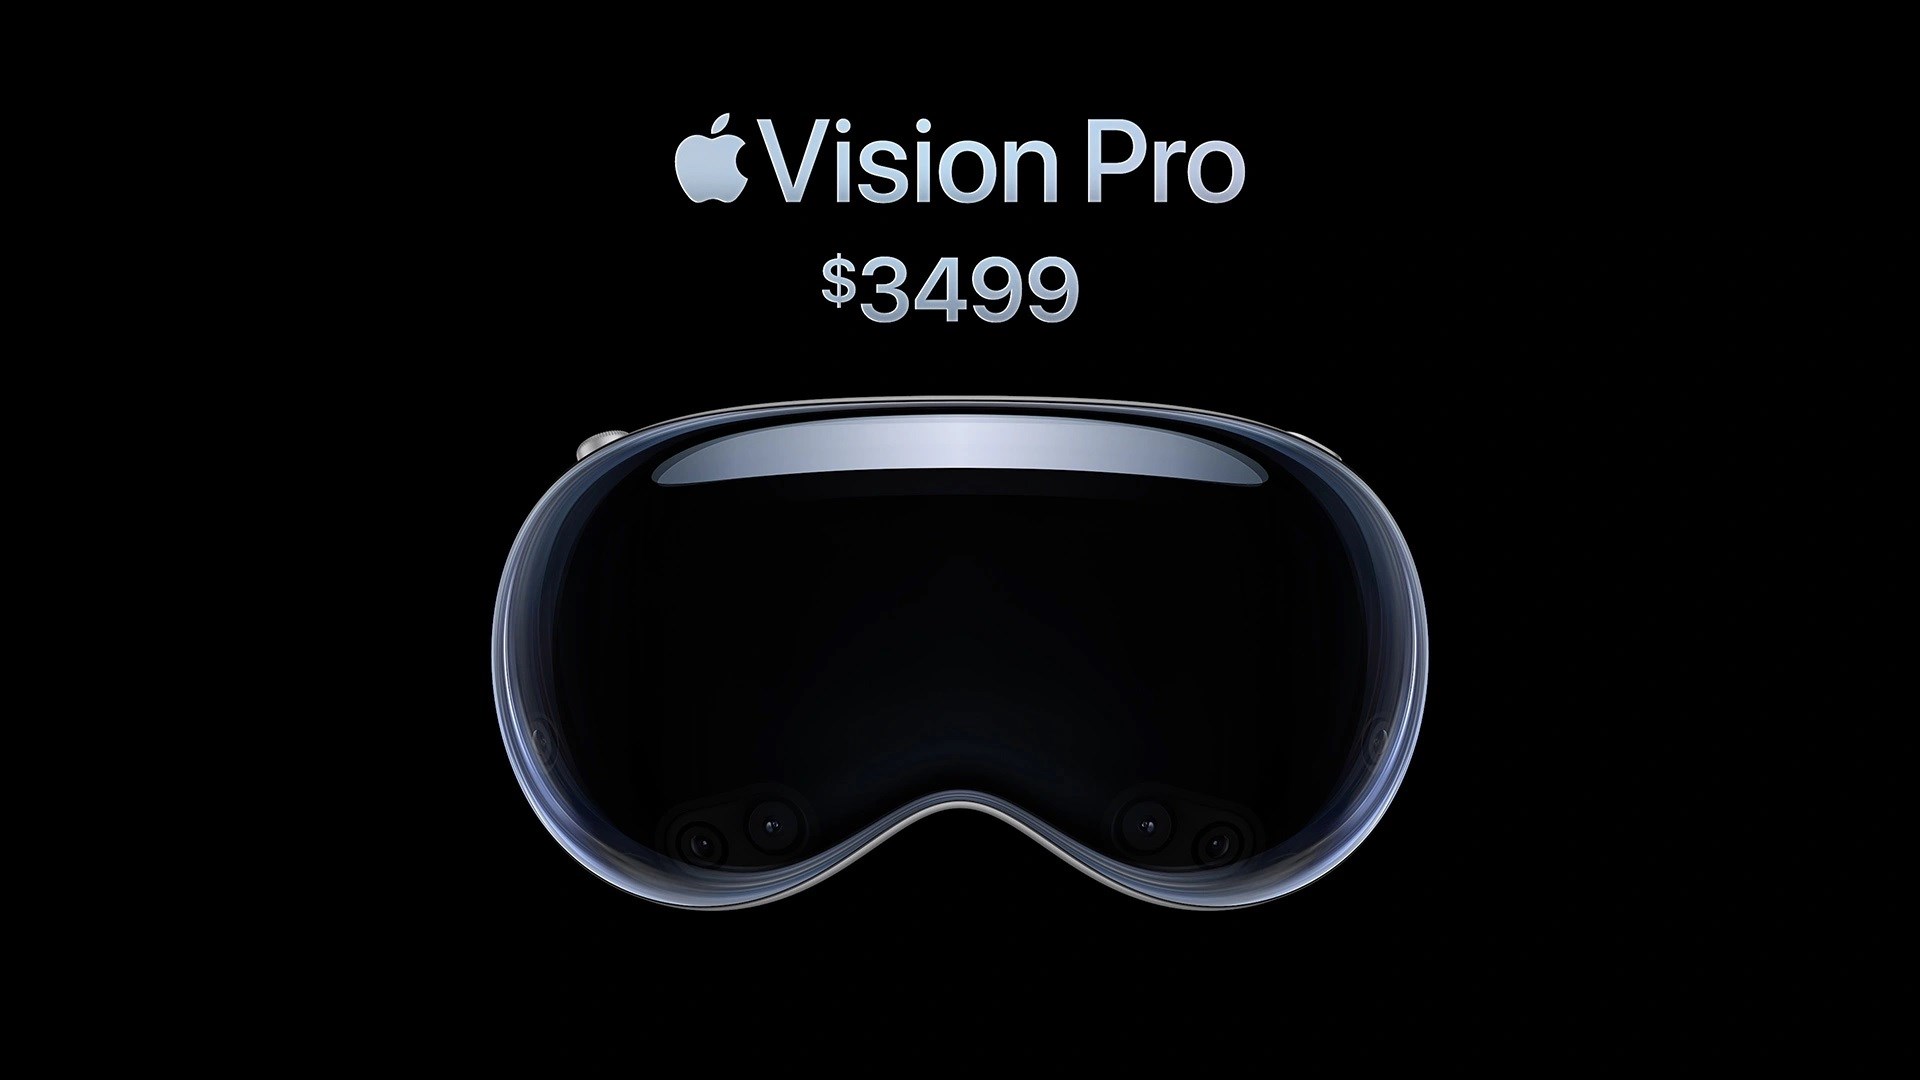 Tüm iPhone ve iPad uygulamaları Vision Pro’da çalışacak